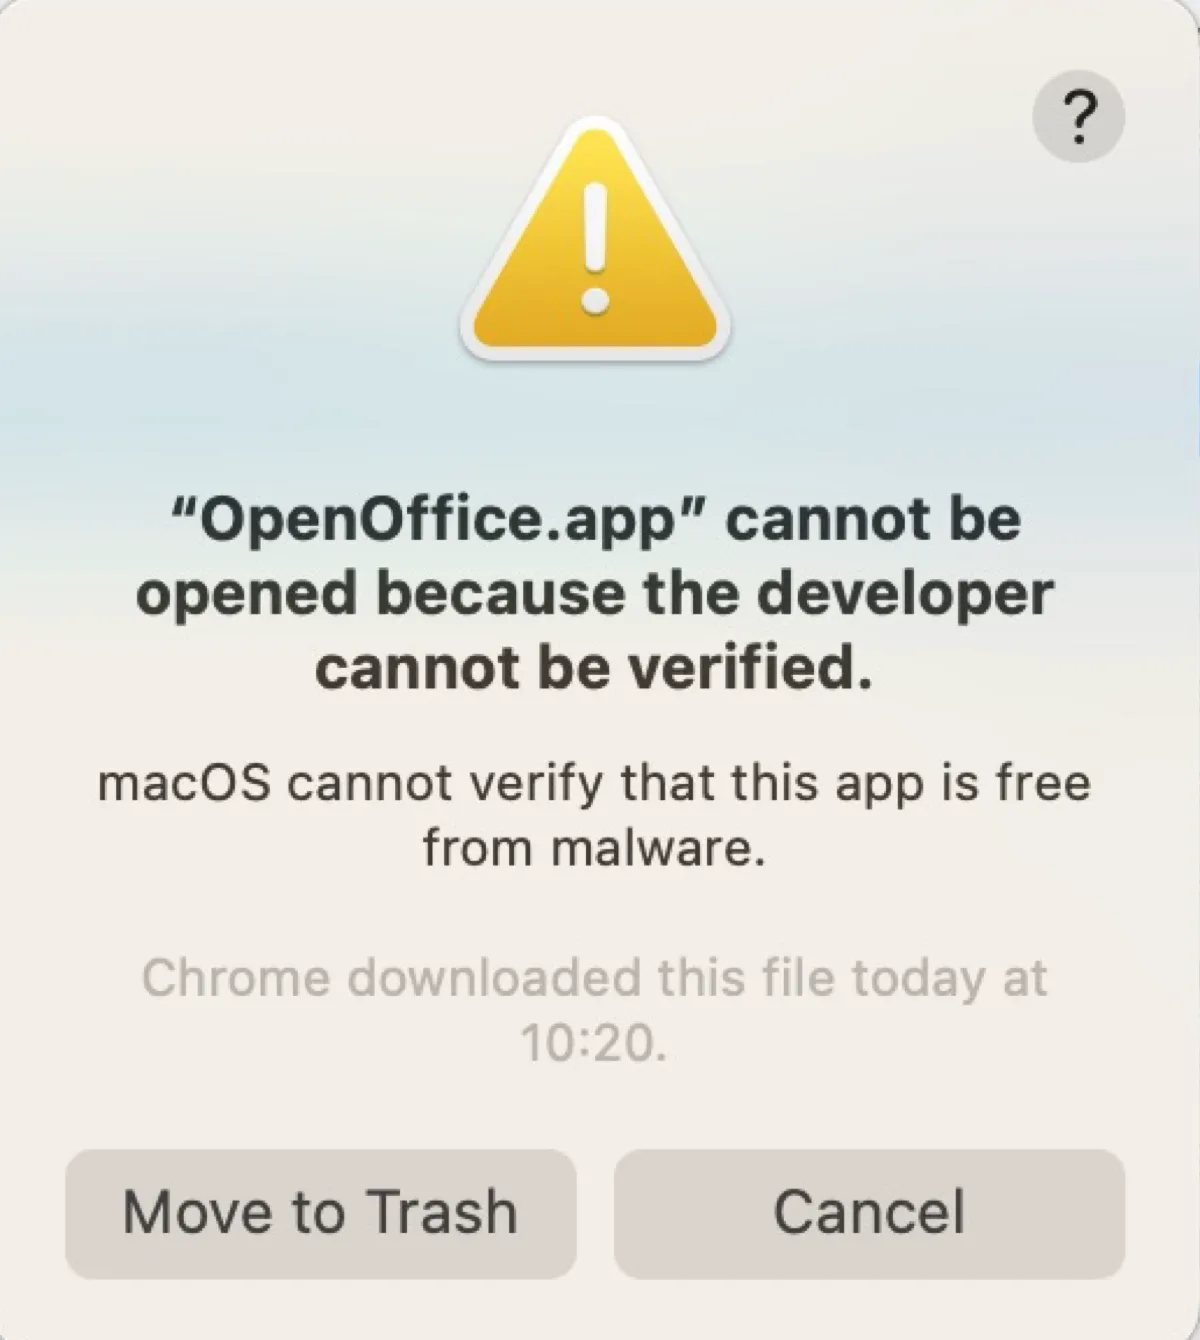 L'erreur disant que L'application ne peut pas être ouverte car le développeur ne peut pas être vérifié